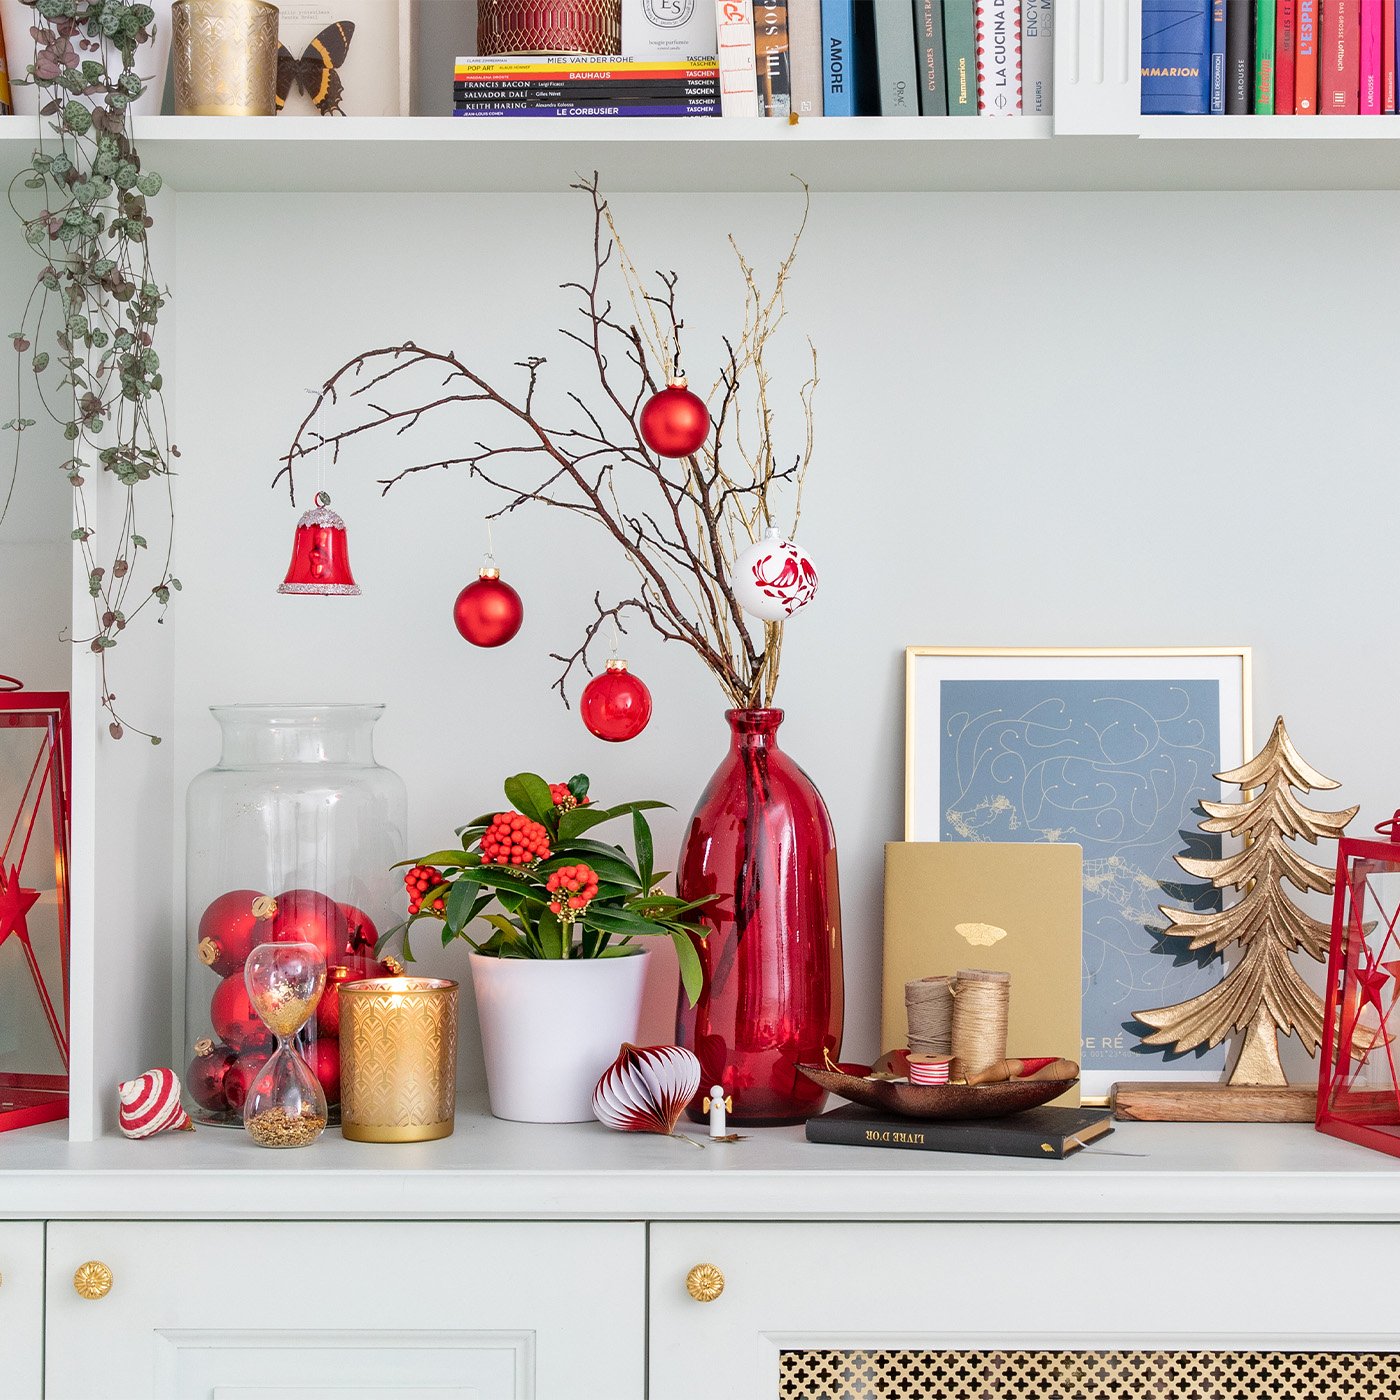 Un meuble décoré pour Noël grâce à différents objets tendances